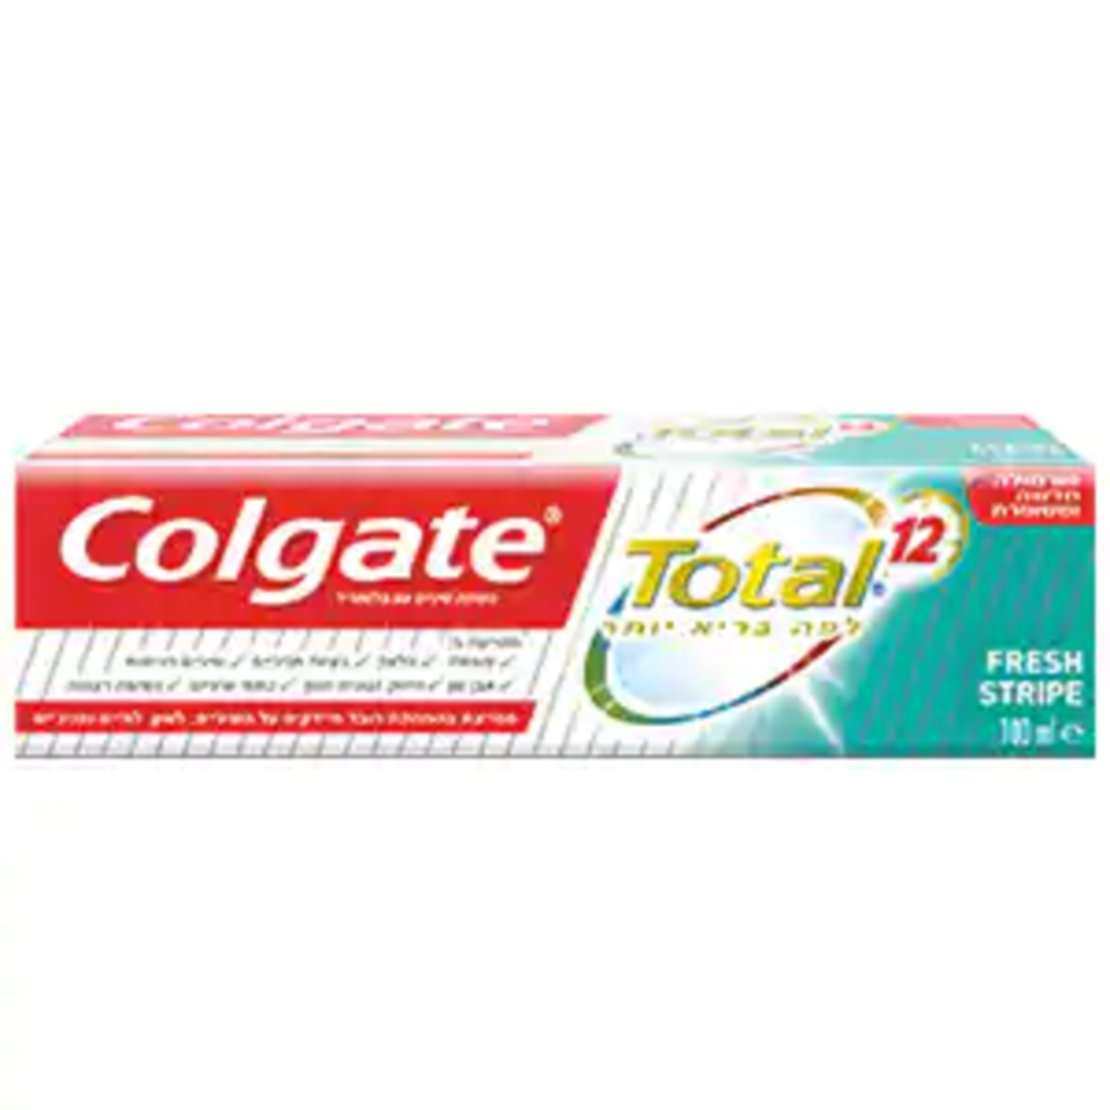 משחת שיניים קולגייט טוטאל פרש 12 שעות הגנה - Colgate